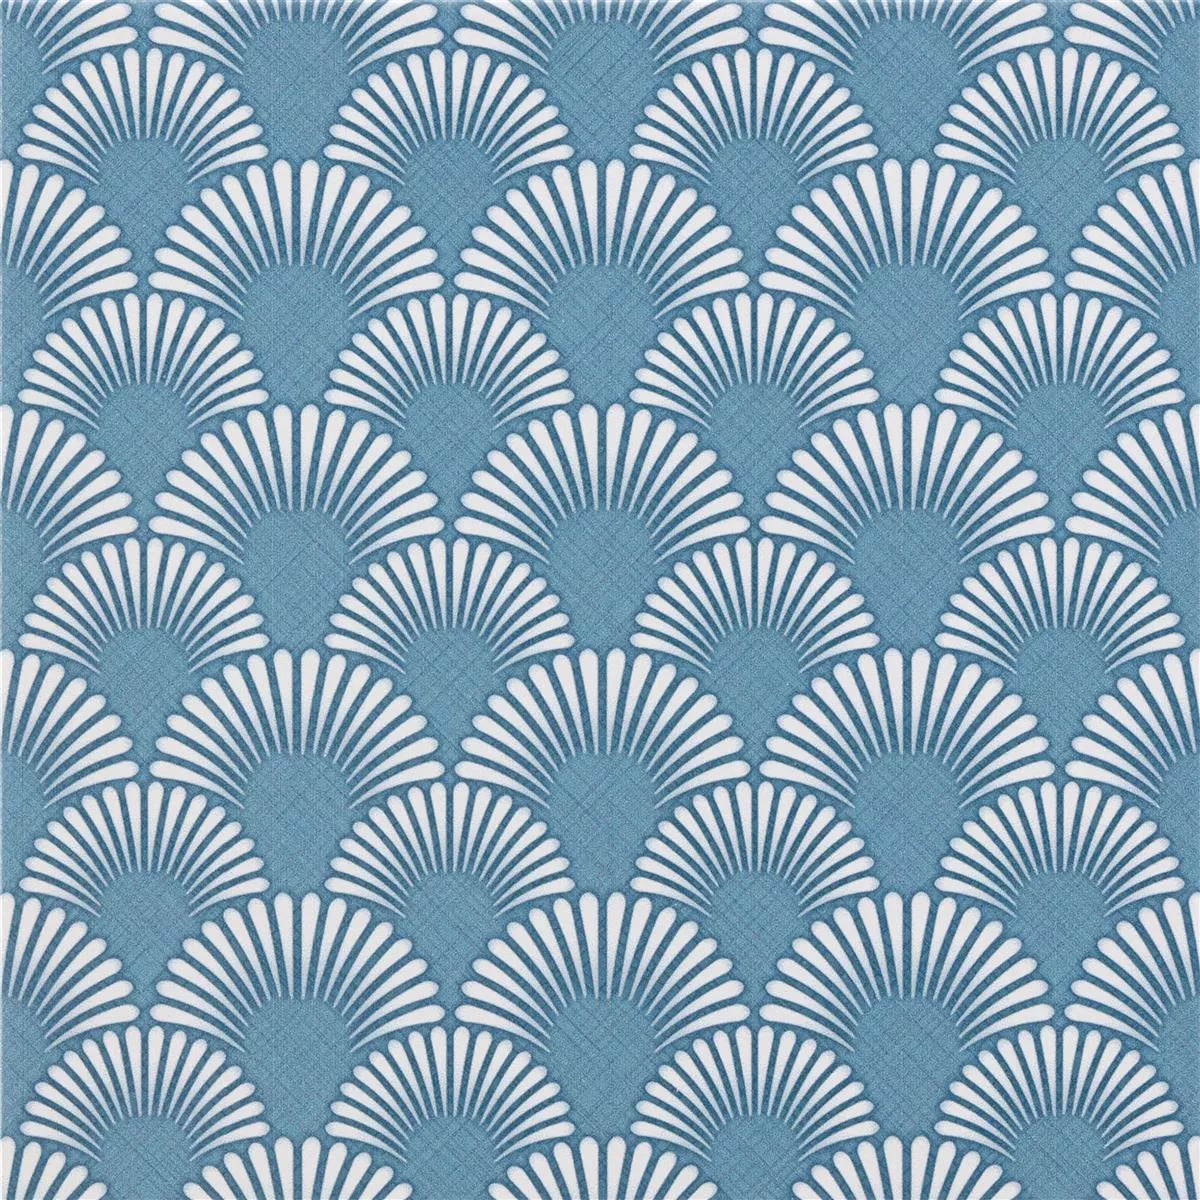 Próbka Płytki Podłogowe Cement Optyka Wildflower Niebieski Dekor 18,5x18,5cm